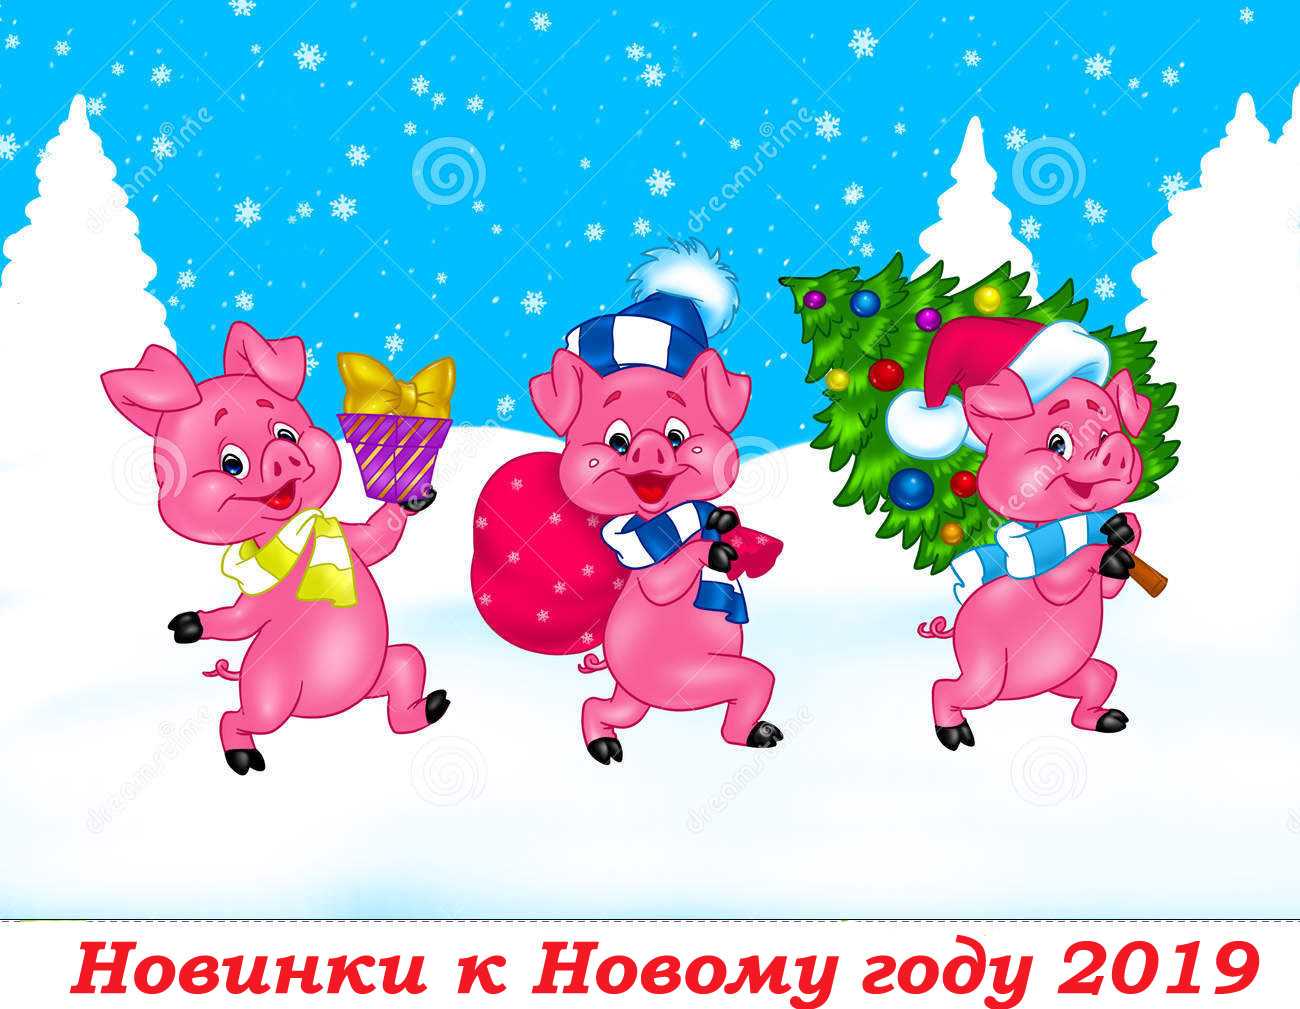 Конкурсы на новый год 2019. новогодние игры и развлечения в год свиньи